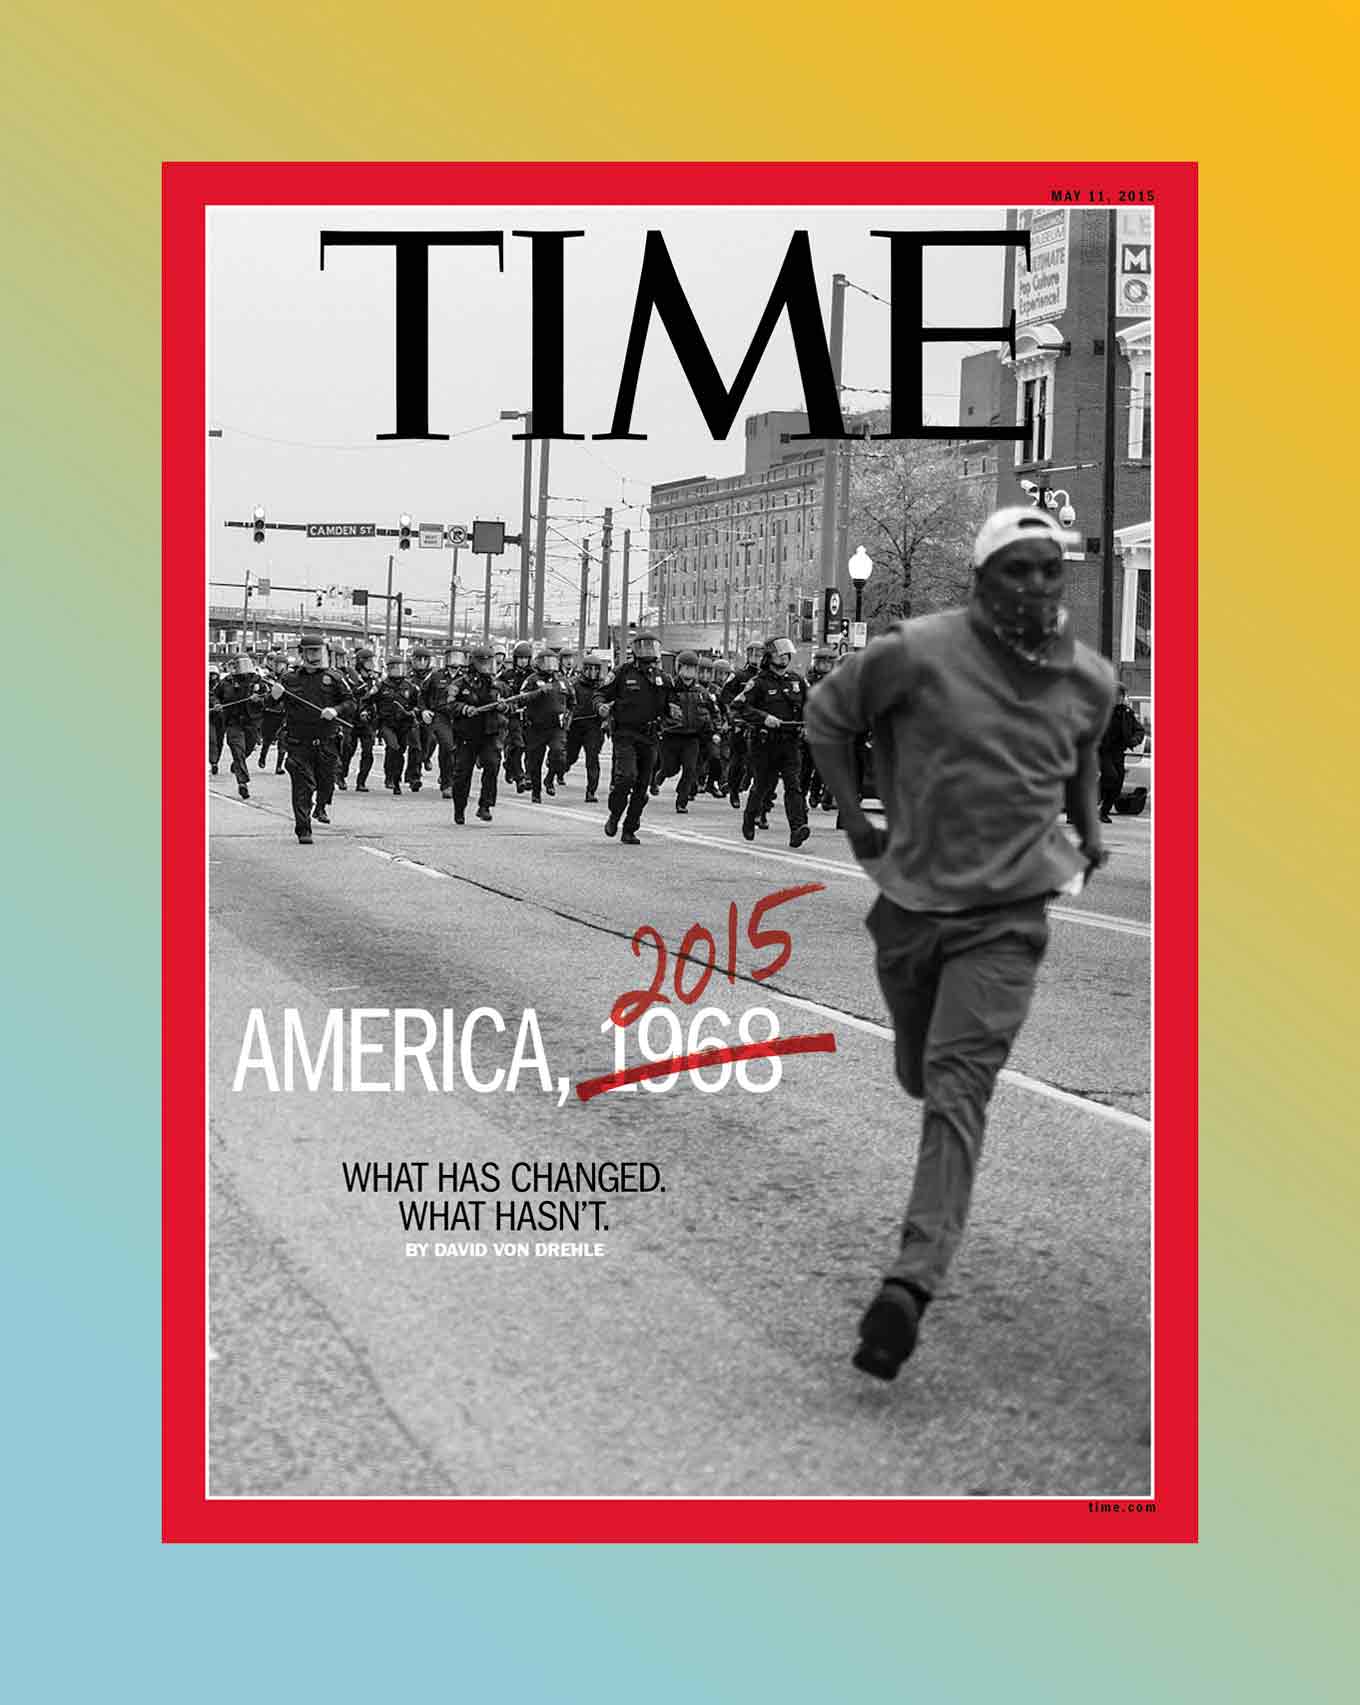 Devin Allen's TIME Magazine voorpagina, met de tekst: America 2015 (met 1968 doorgestreept) Wat is er veranderd, wat niet.